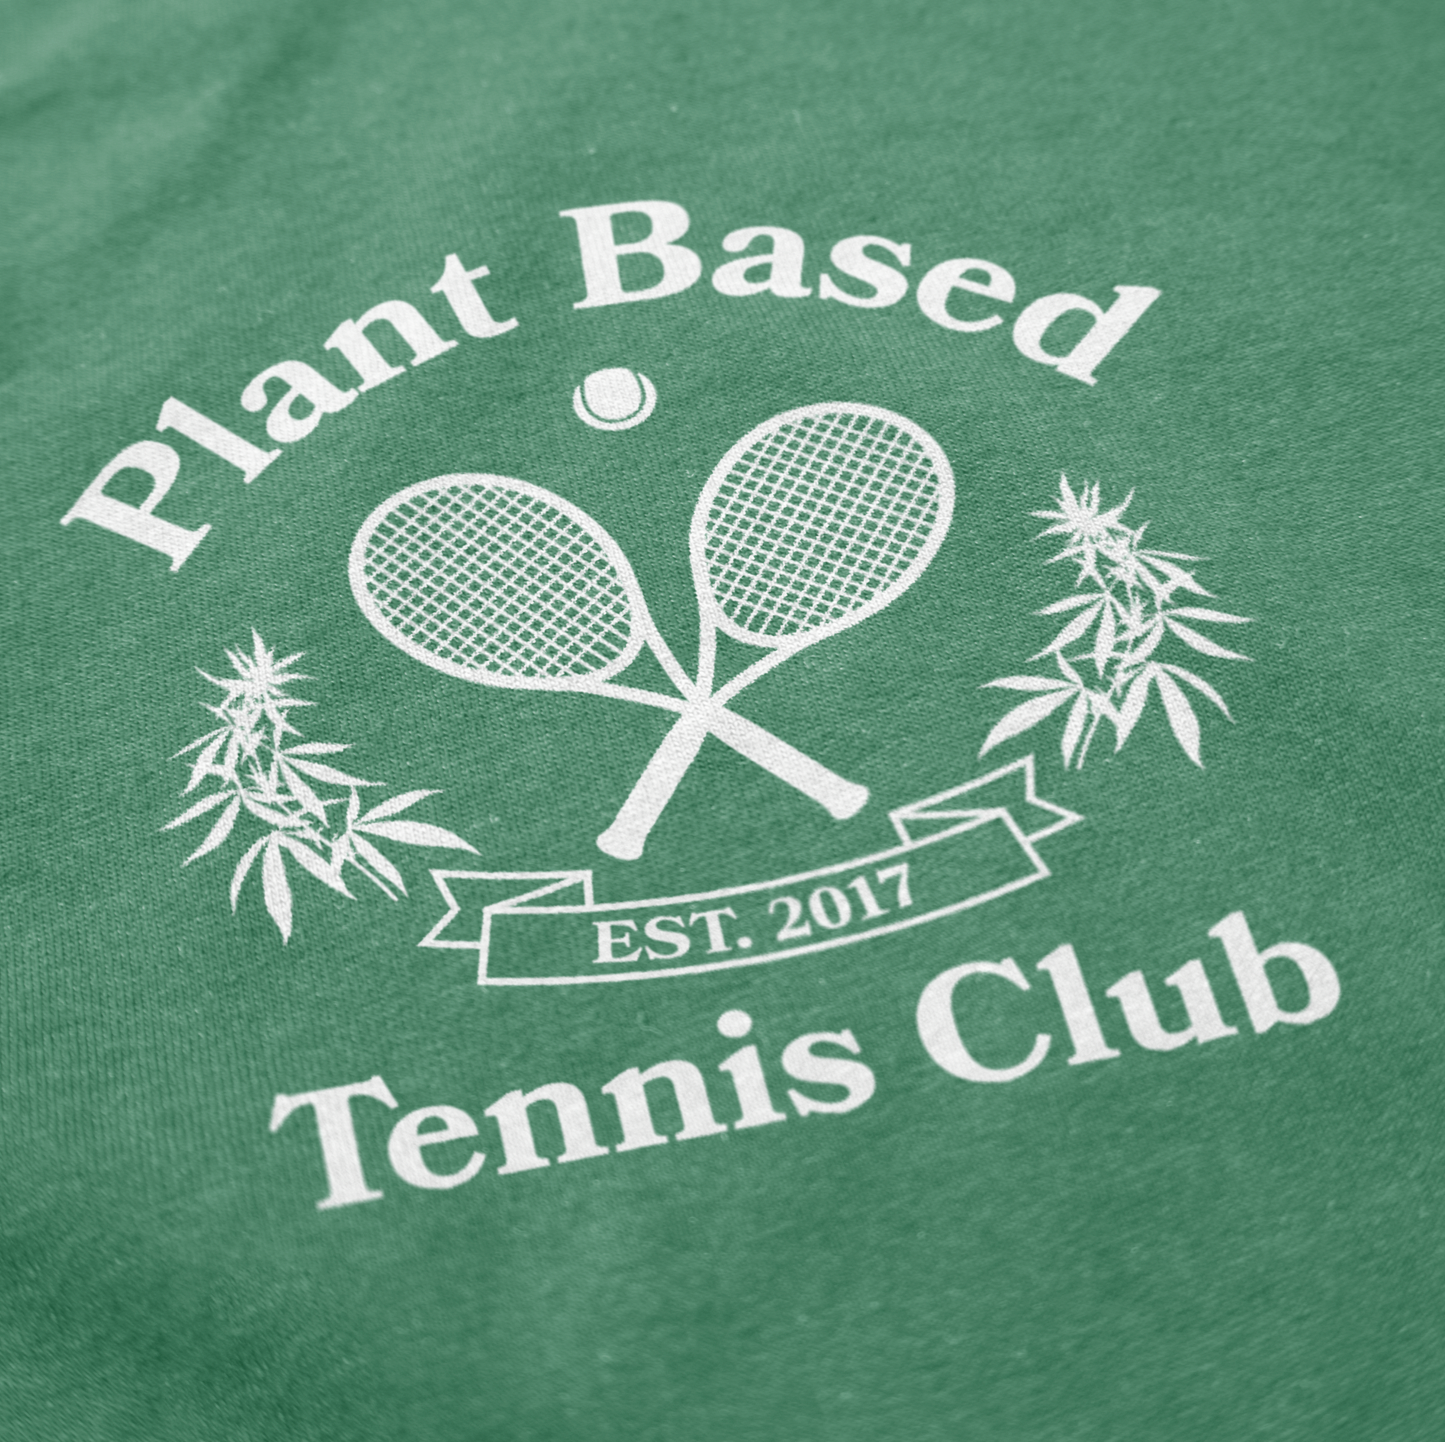 Plant Based Tennis Club Tee